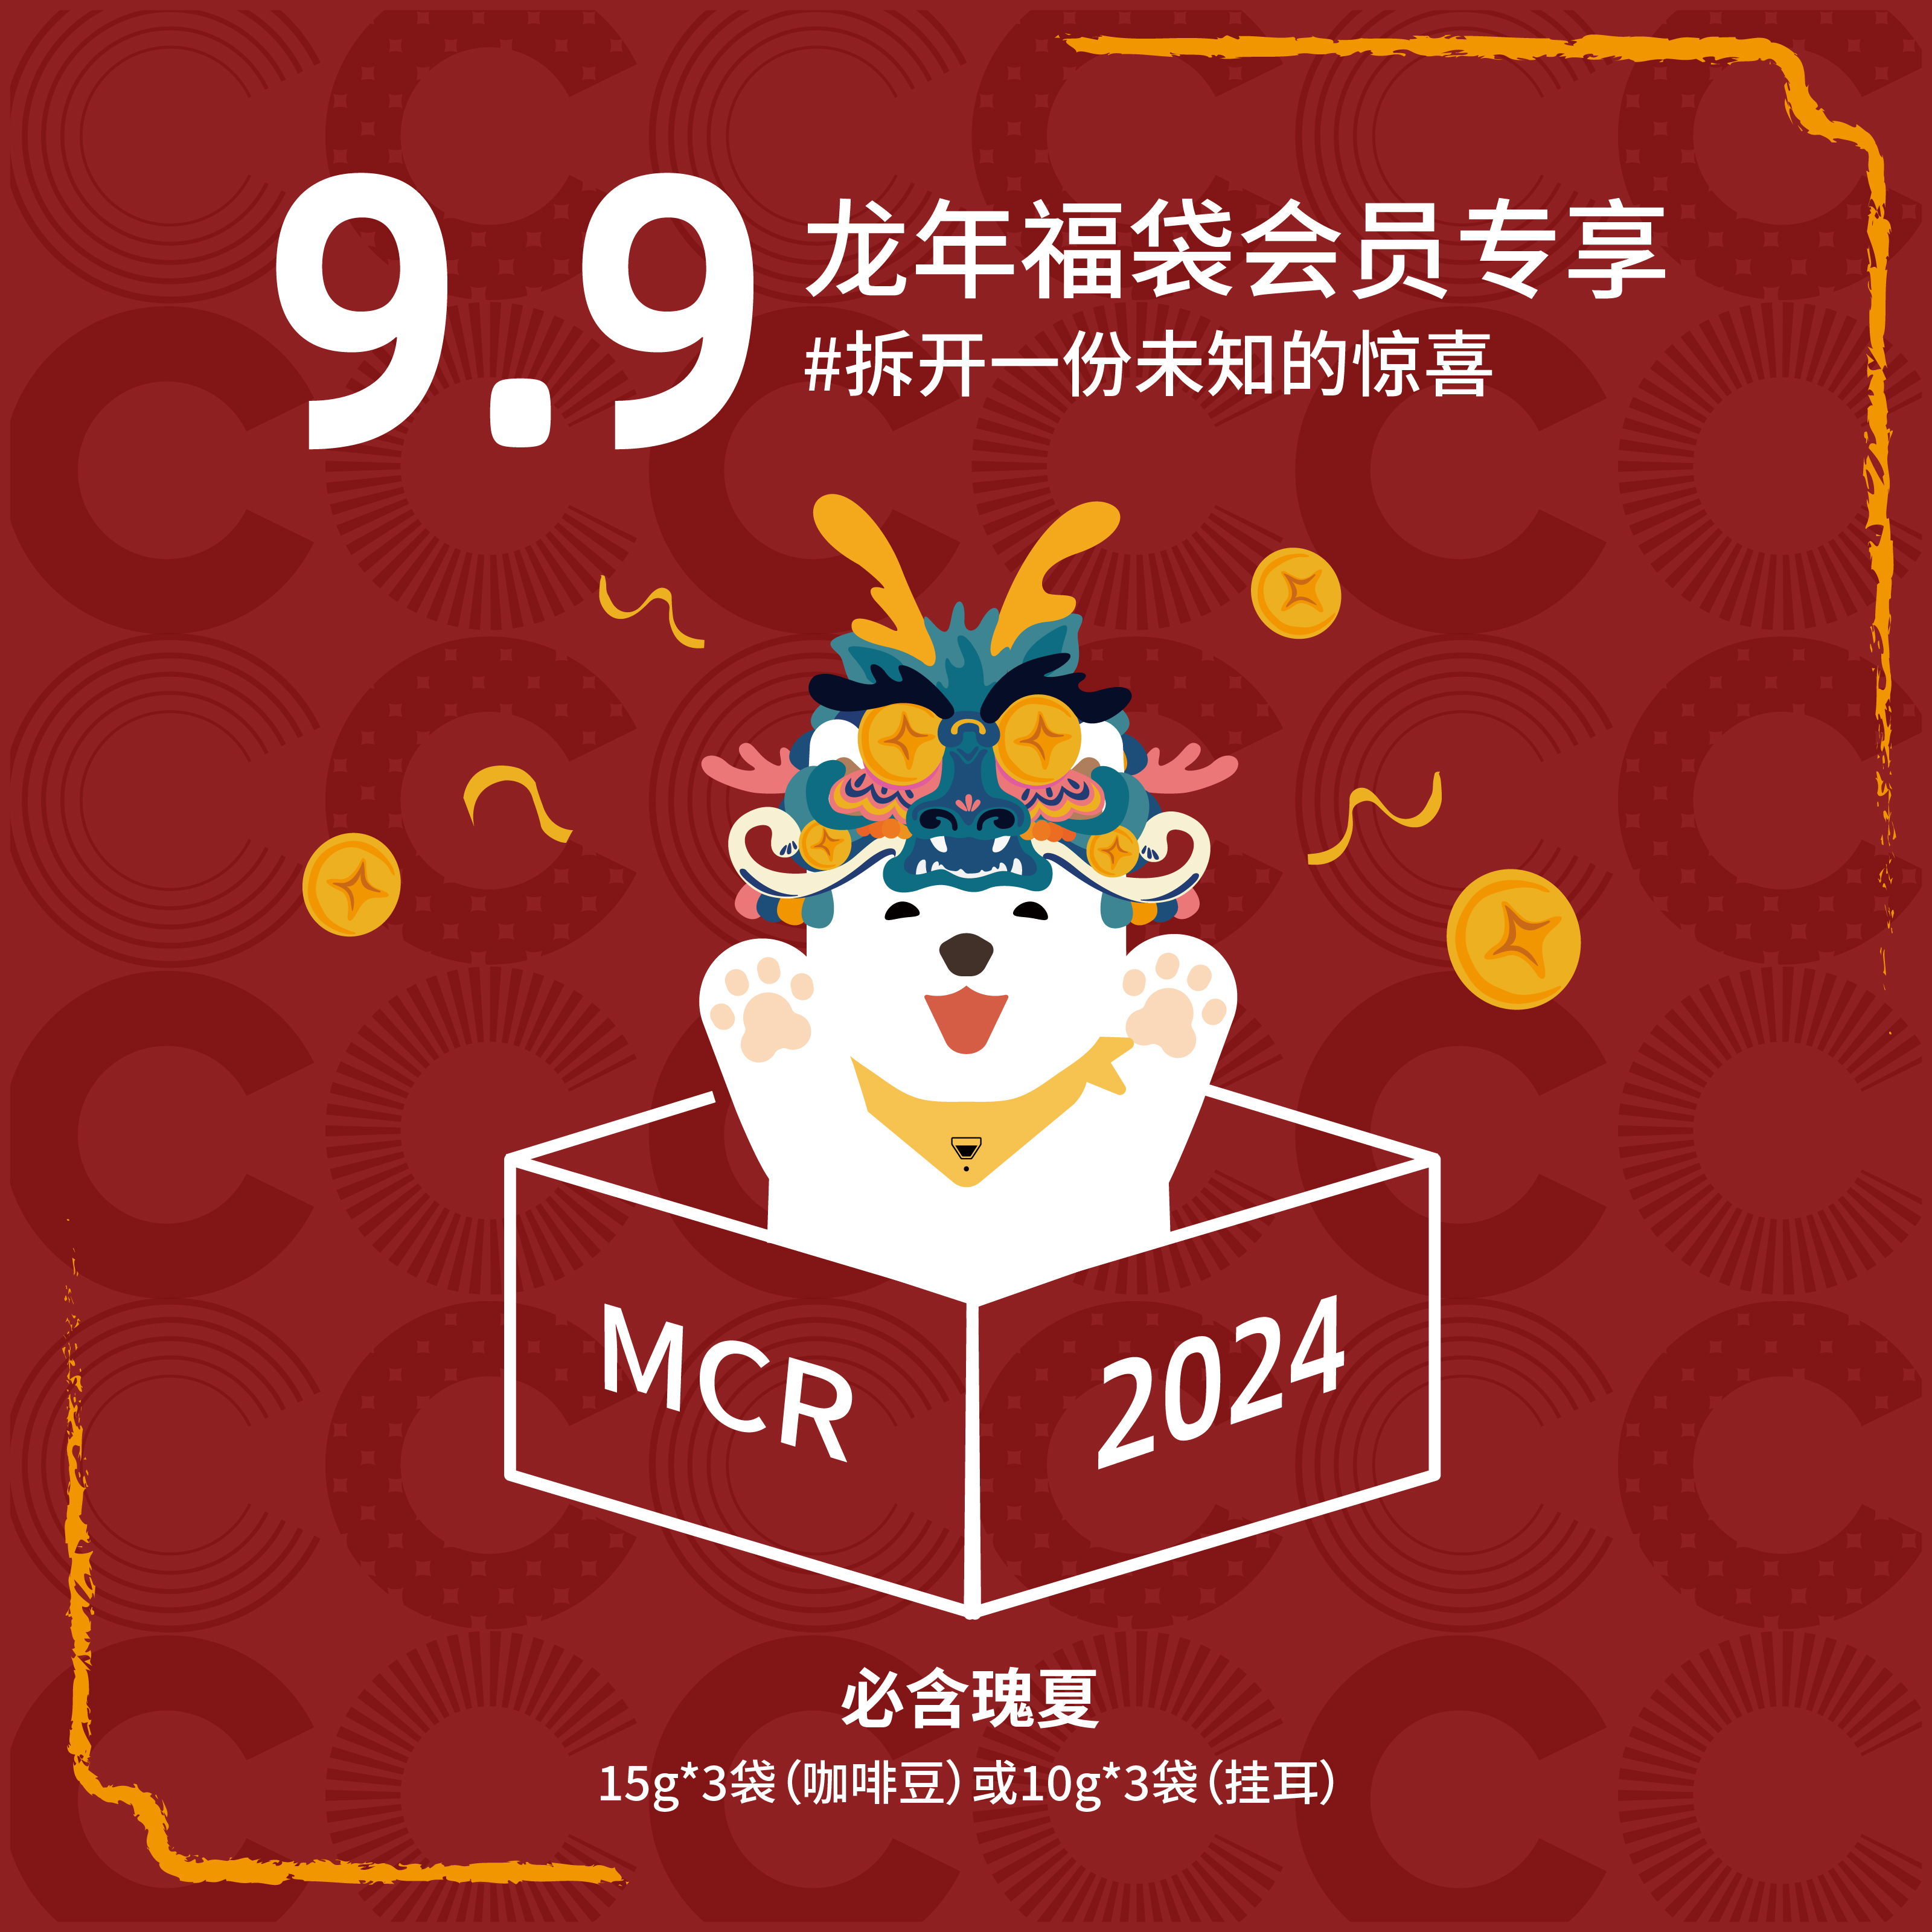 【0元入会】MCR微焙咖啡龙年福袋9.9会员专享 咖啡豆挂耳必含瑰夏